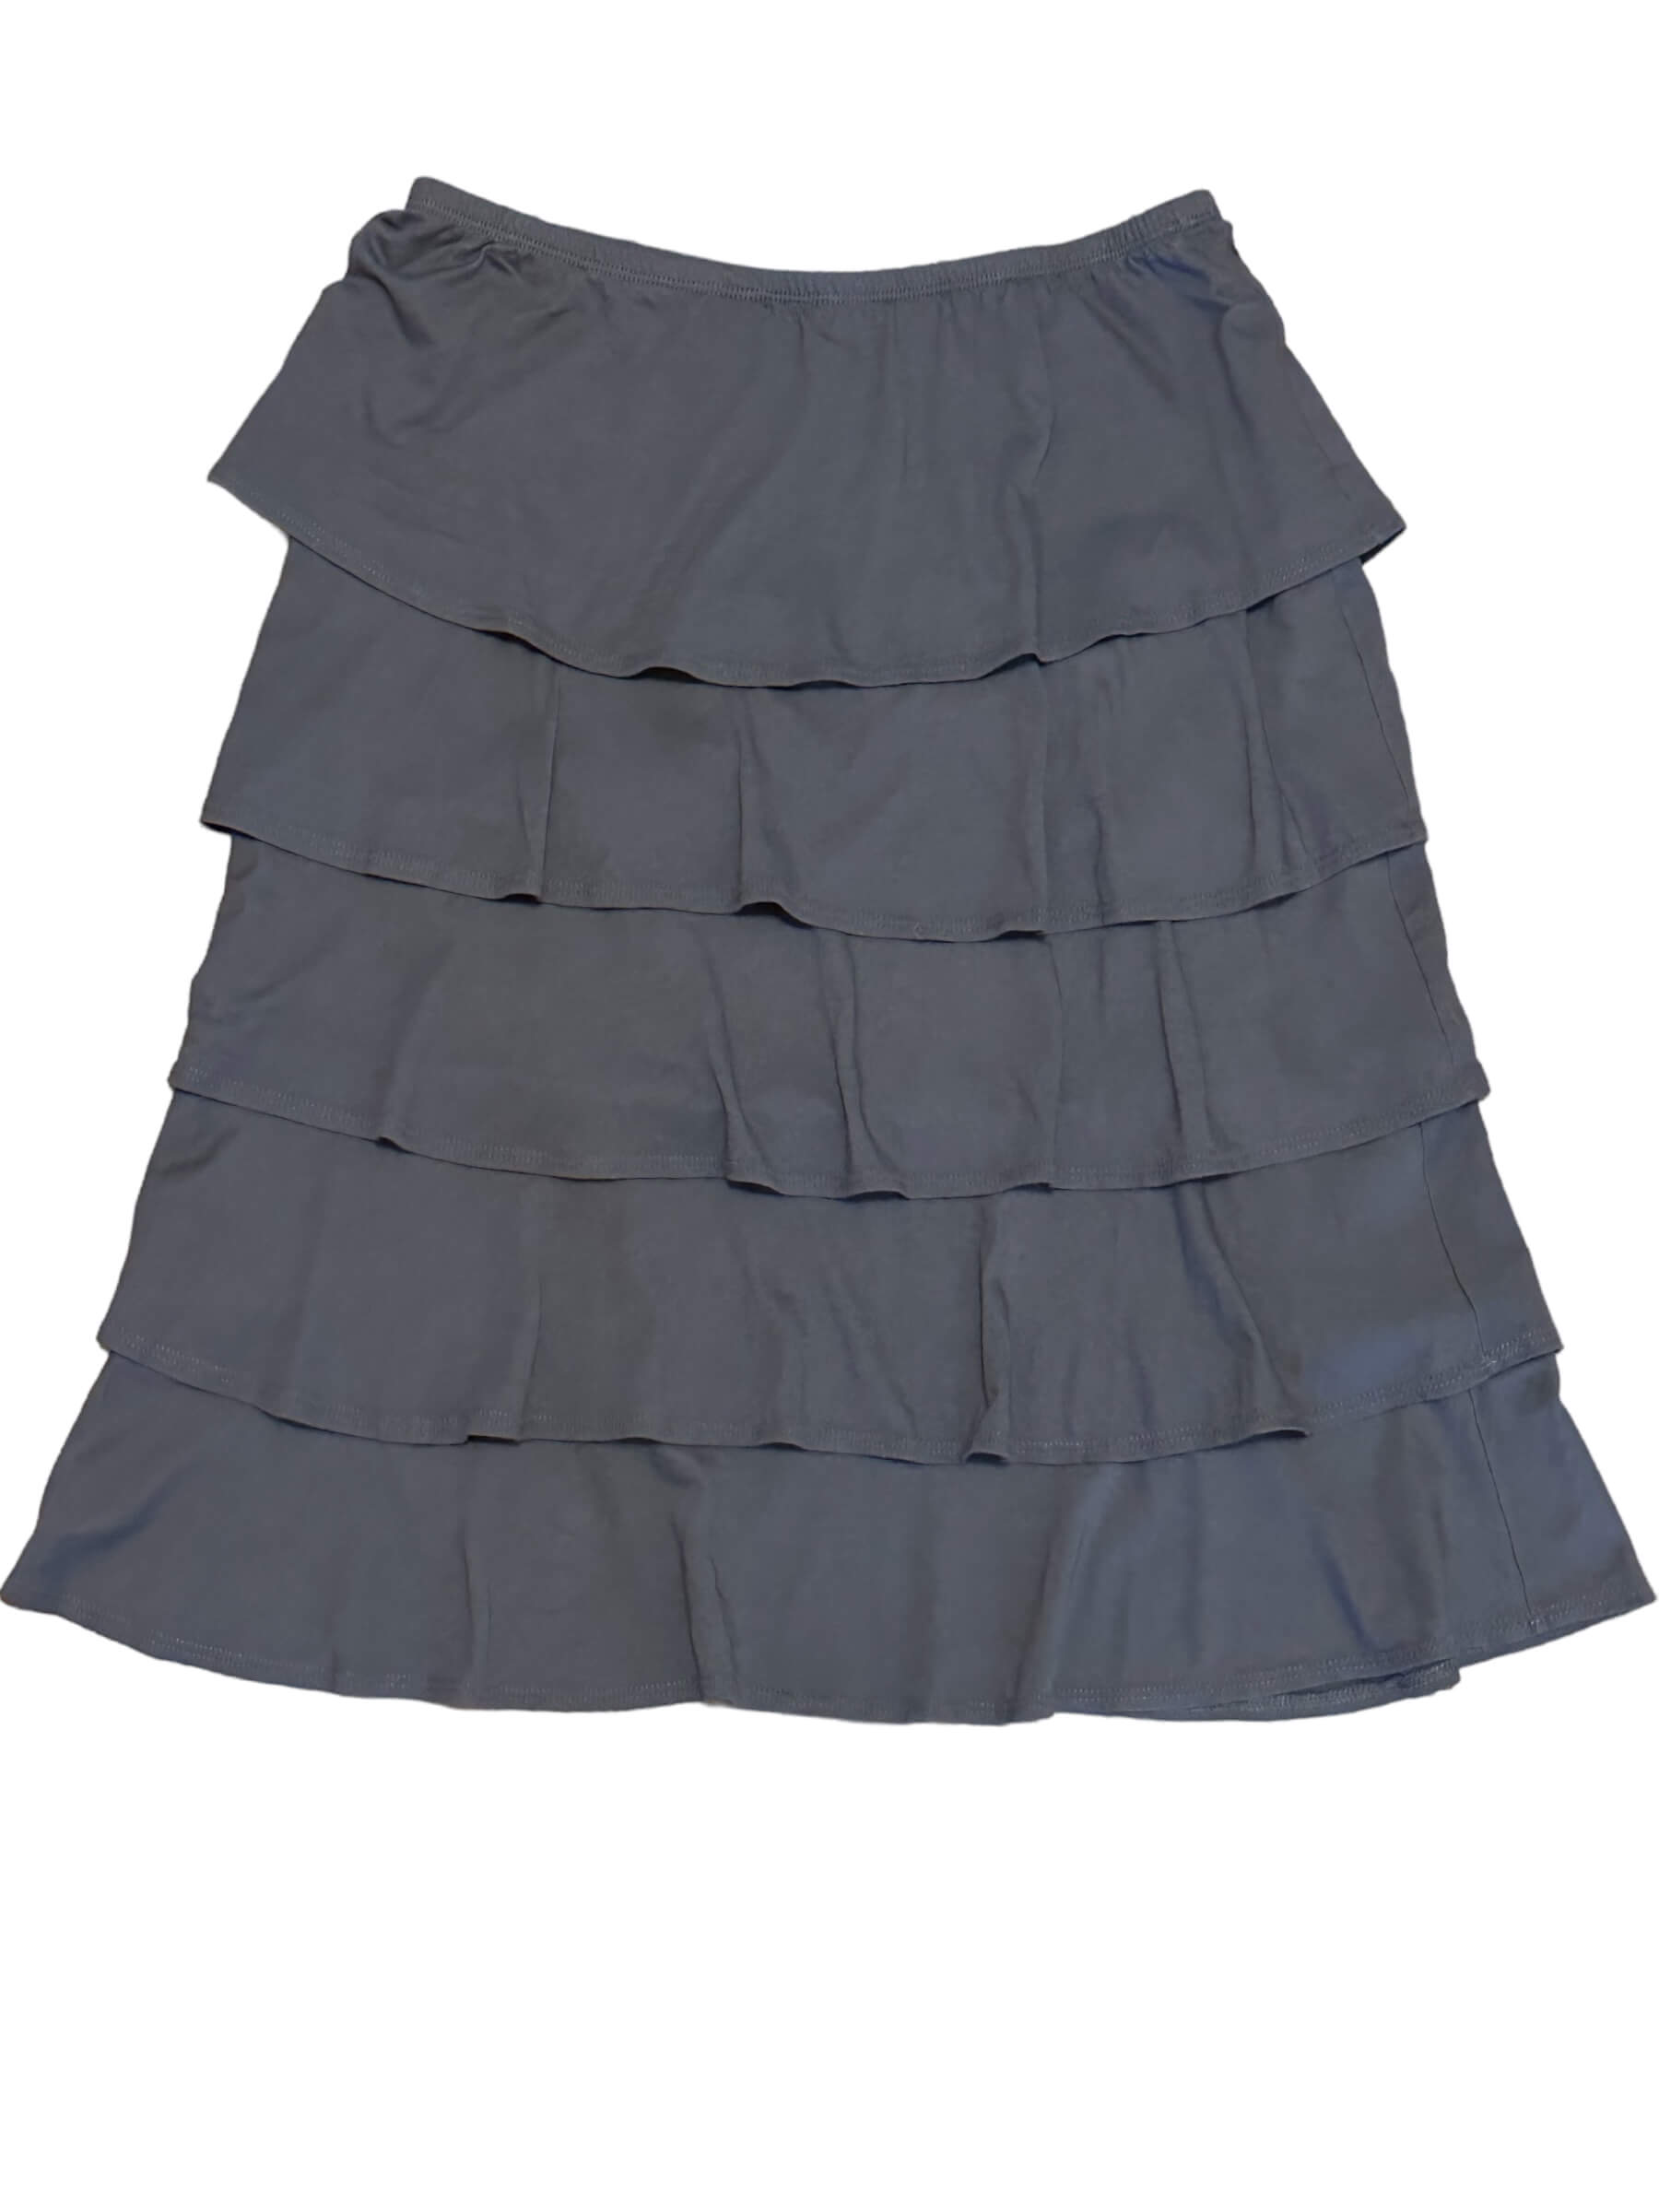 Soft Summer GARNET HILL cobblestone gray ruffle tiered skirt